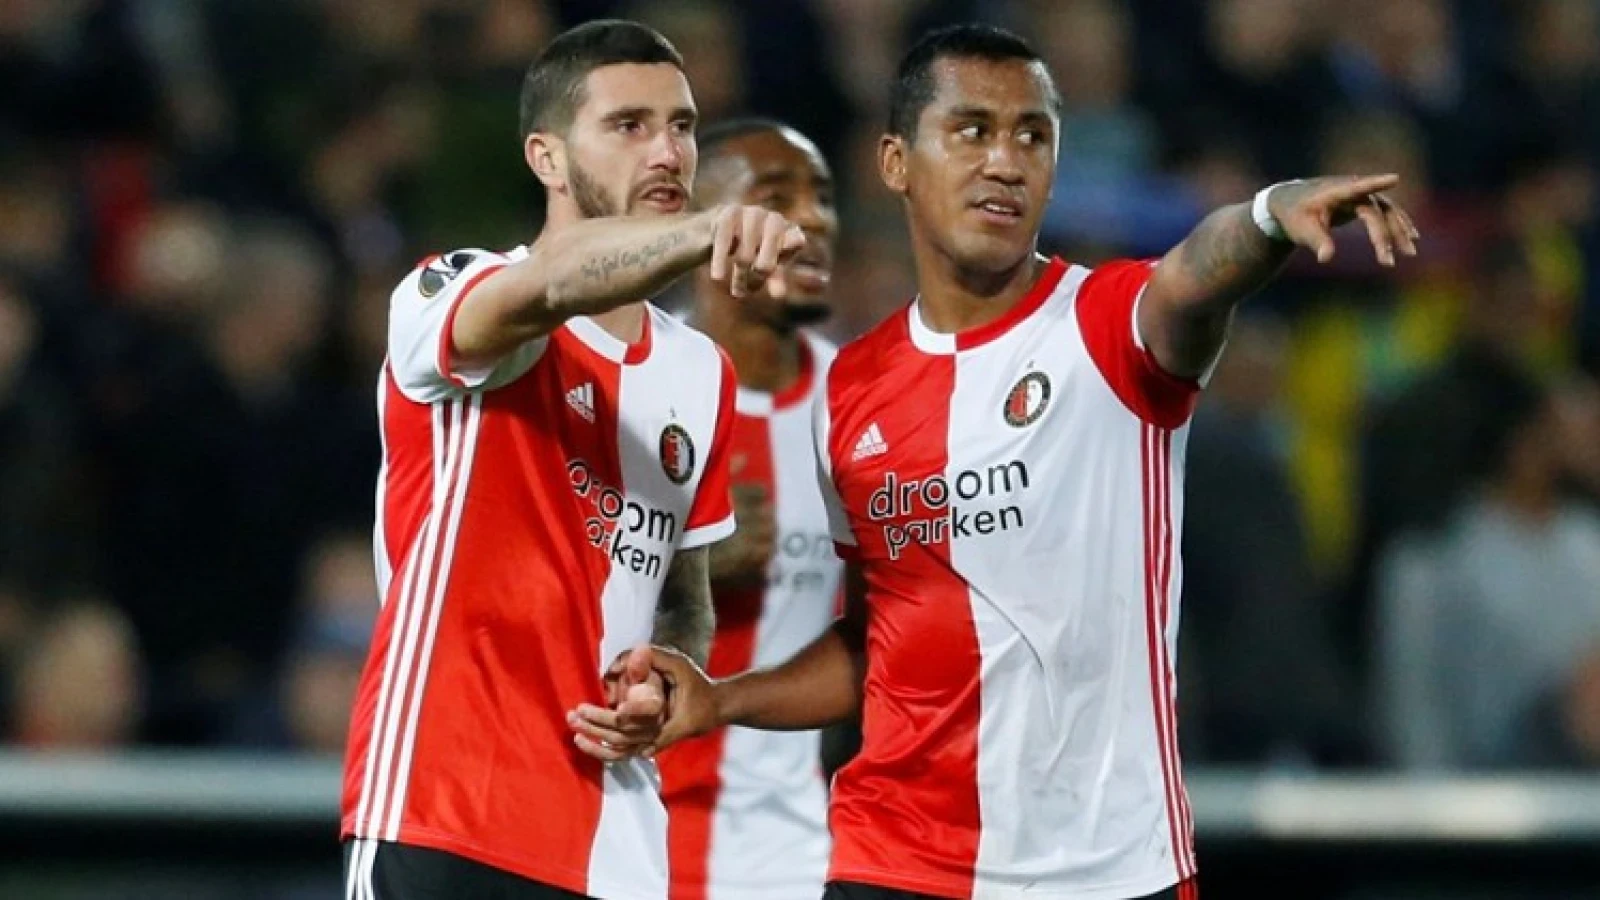 'Dan maakt Feyenoord zich volkomen belachelijk'